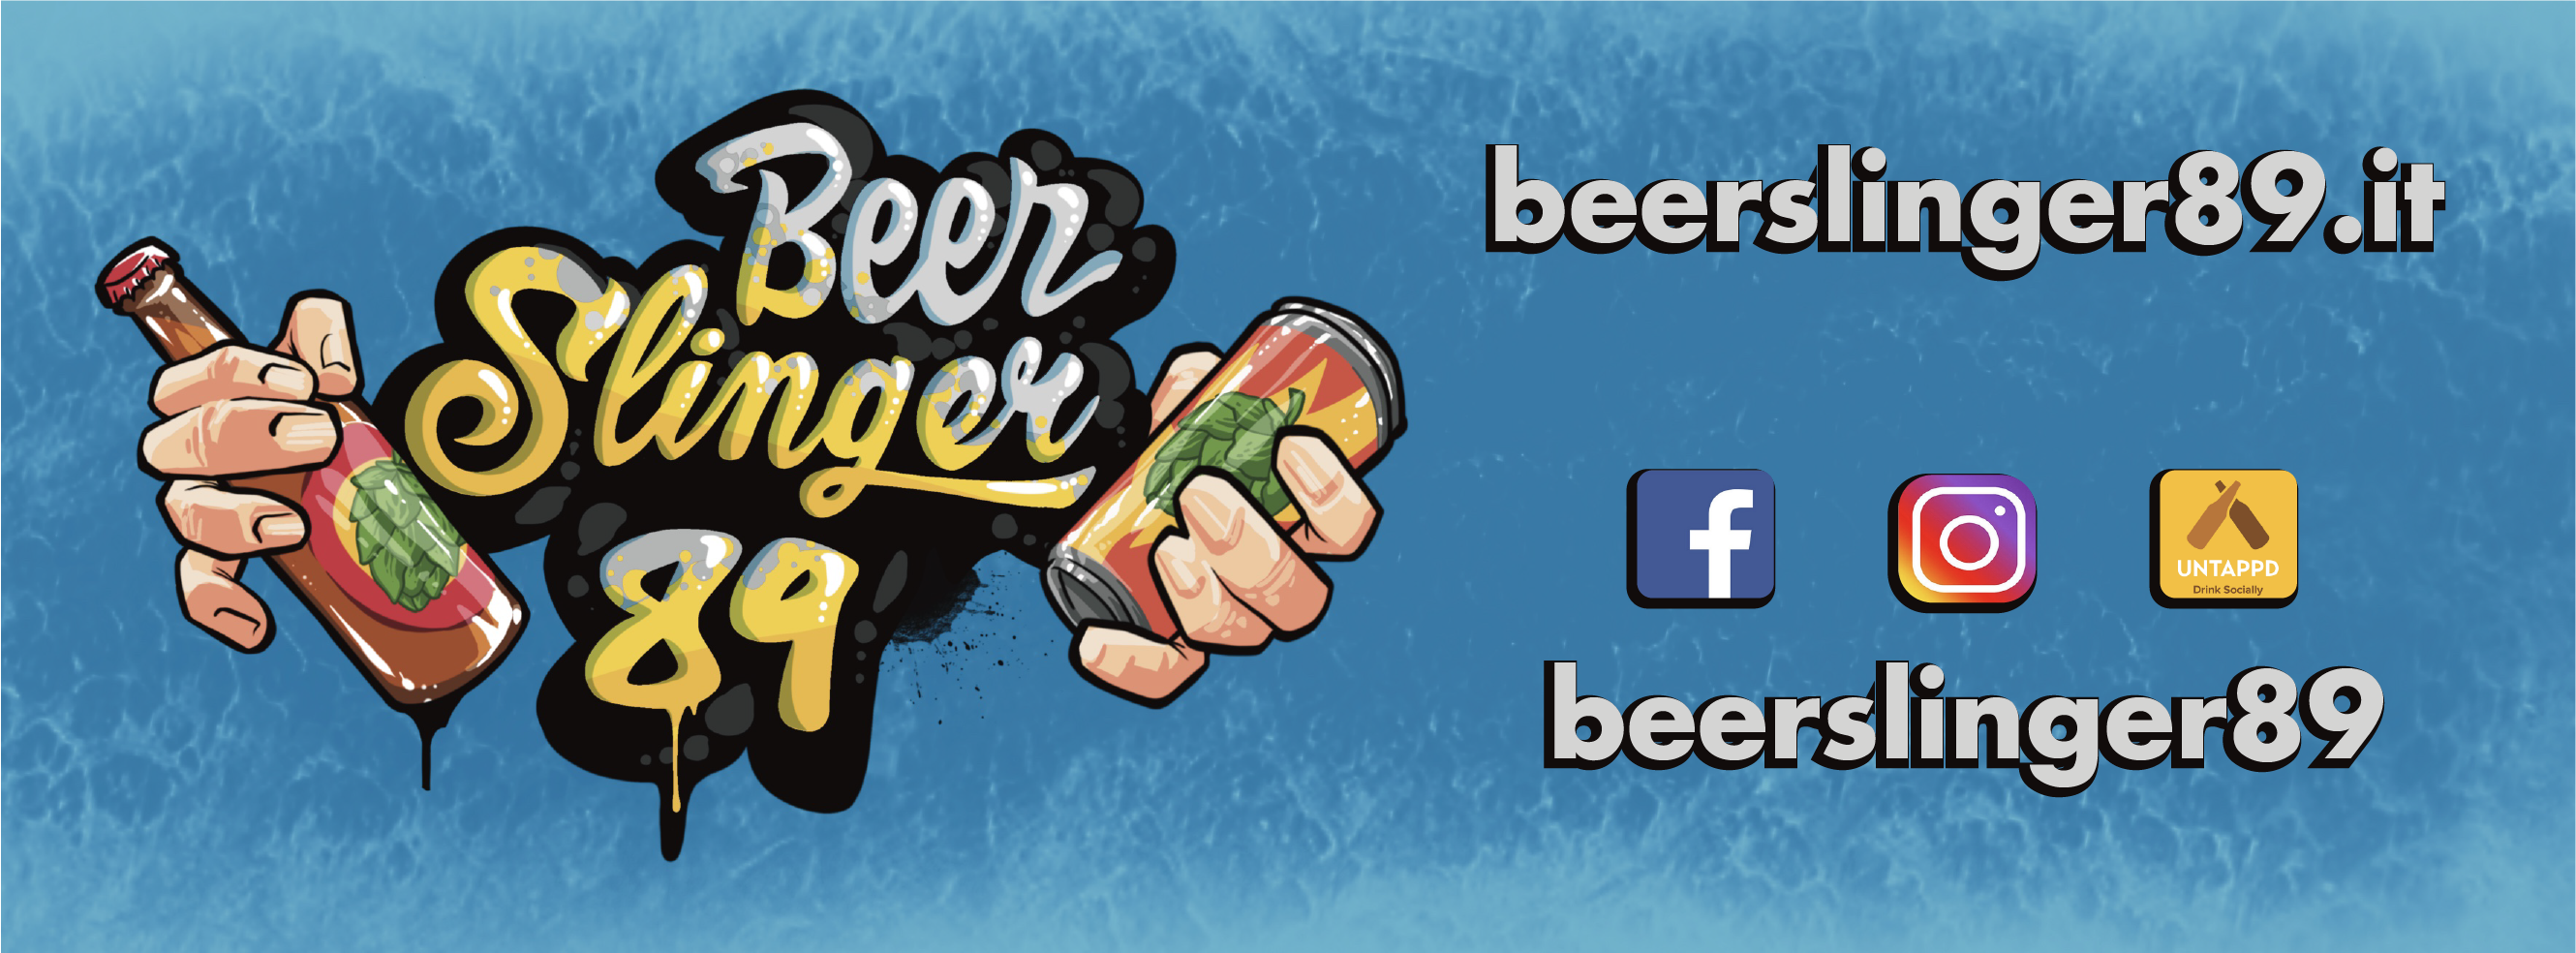 BeerSlinger89